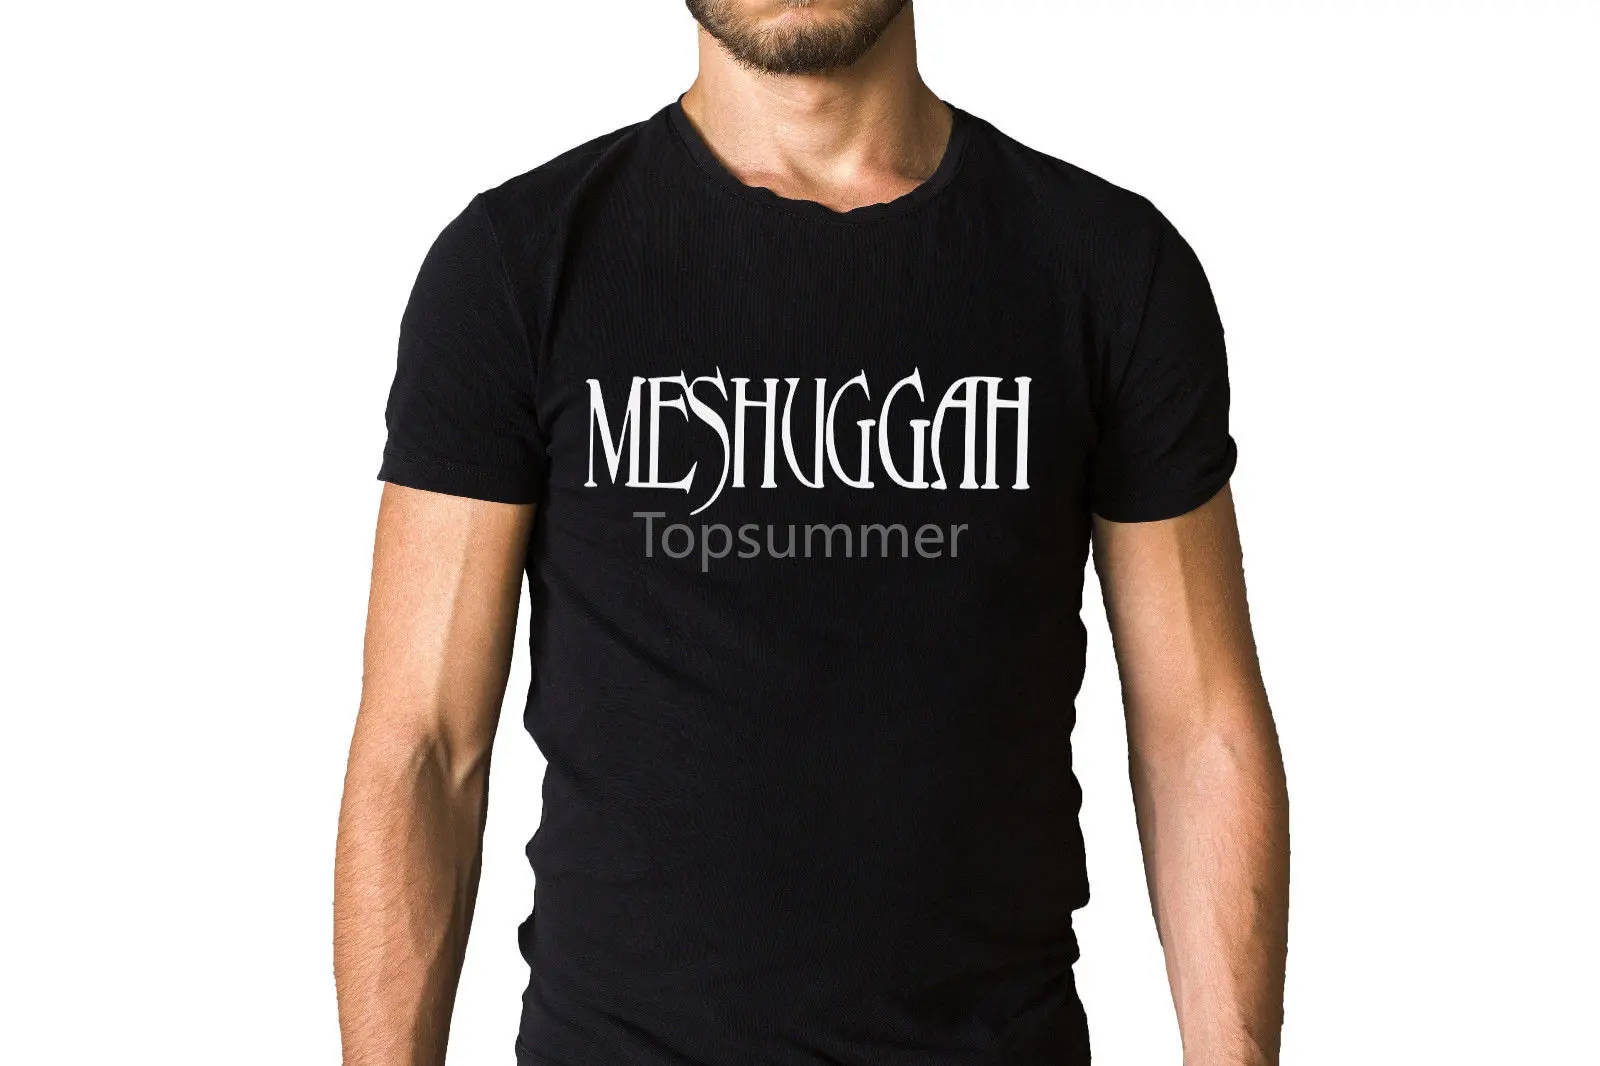 

Футболка Meshuggah с логотипом группы, Модная уникальная Классическая хлопковая Мужская футболка с коротким рукавом, дешевая распродажа, хлопковая футболка